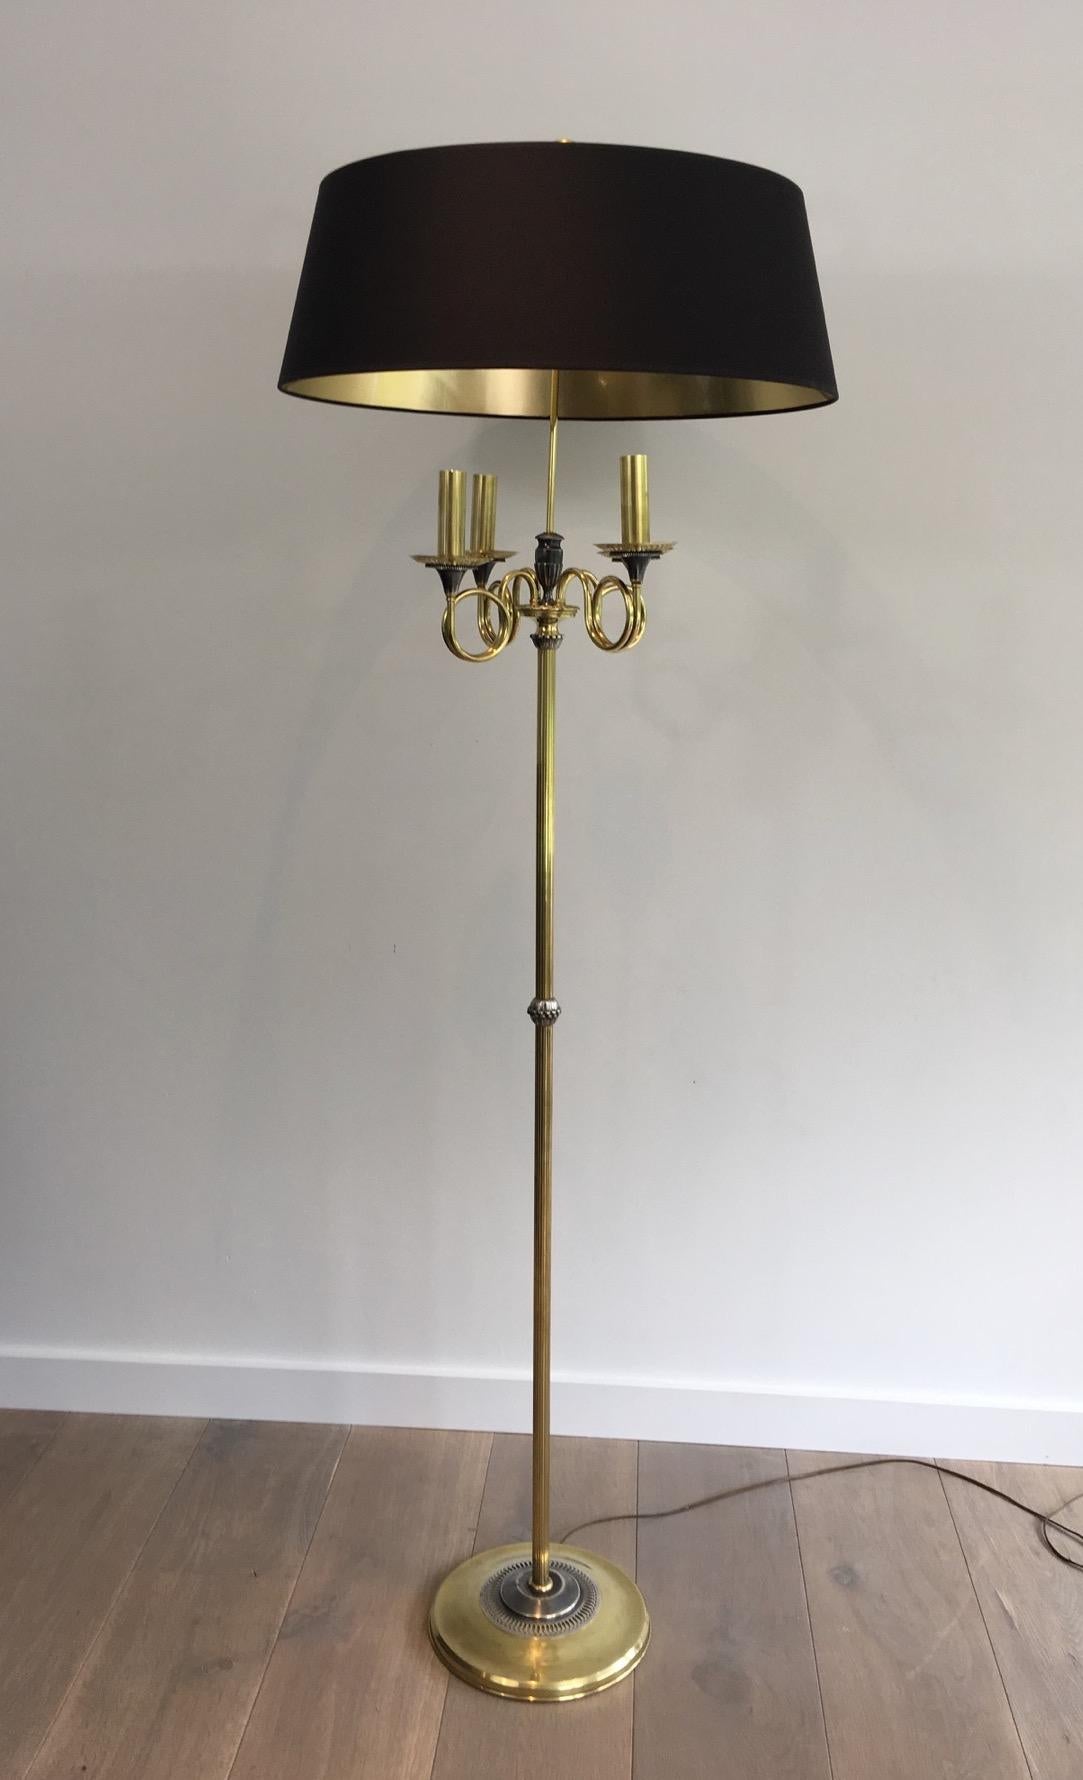 Diese sehr schöne Stehlampe im neoklassischen Stil ist aus  versilbert und Messing. Die Lampe besteht aus 4 Lichtern auf 4 Messinghülsen auf Trompeten. Sie hat einen Messingring auf der Oberseite der Lampe. Es handelt sich um ein französisches Werk